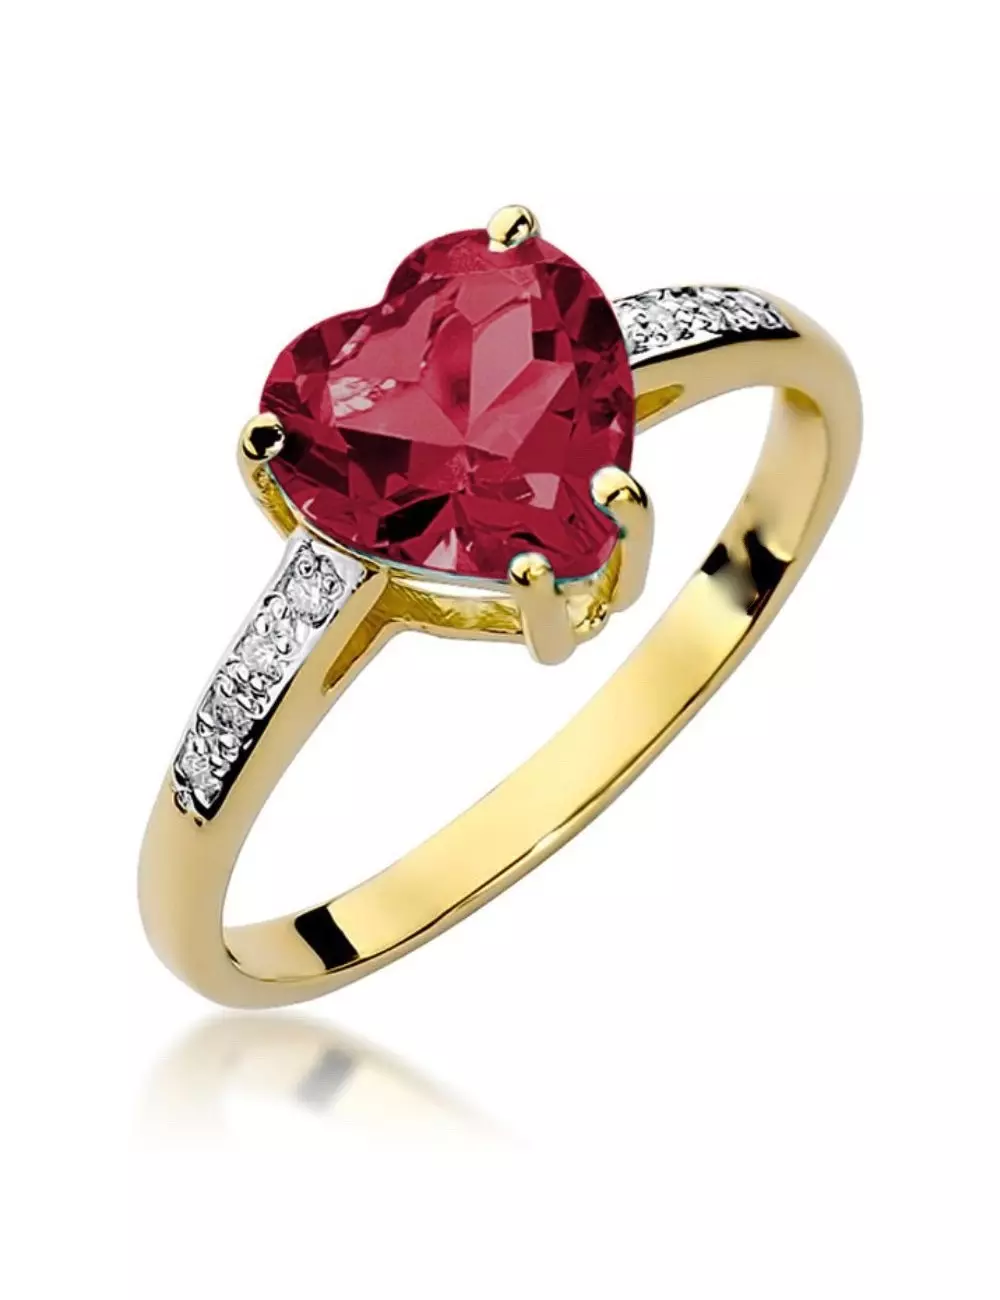 Rubininė širdelė - aukso žiedas su širdelės formos rubinu ir deimantais